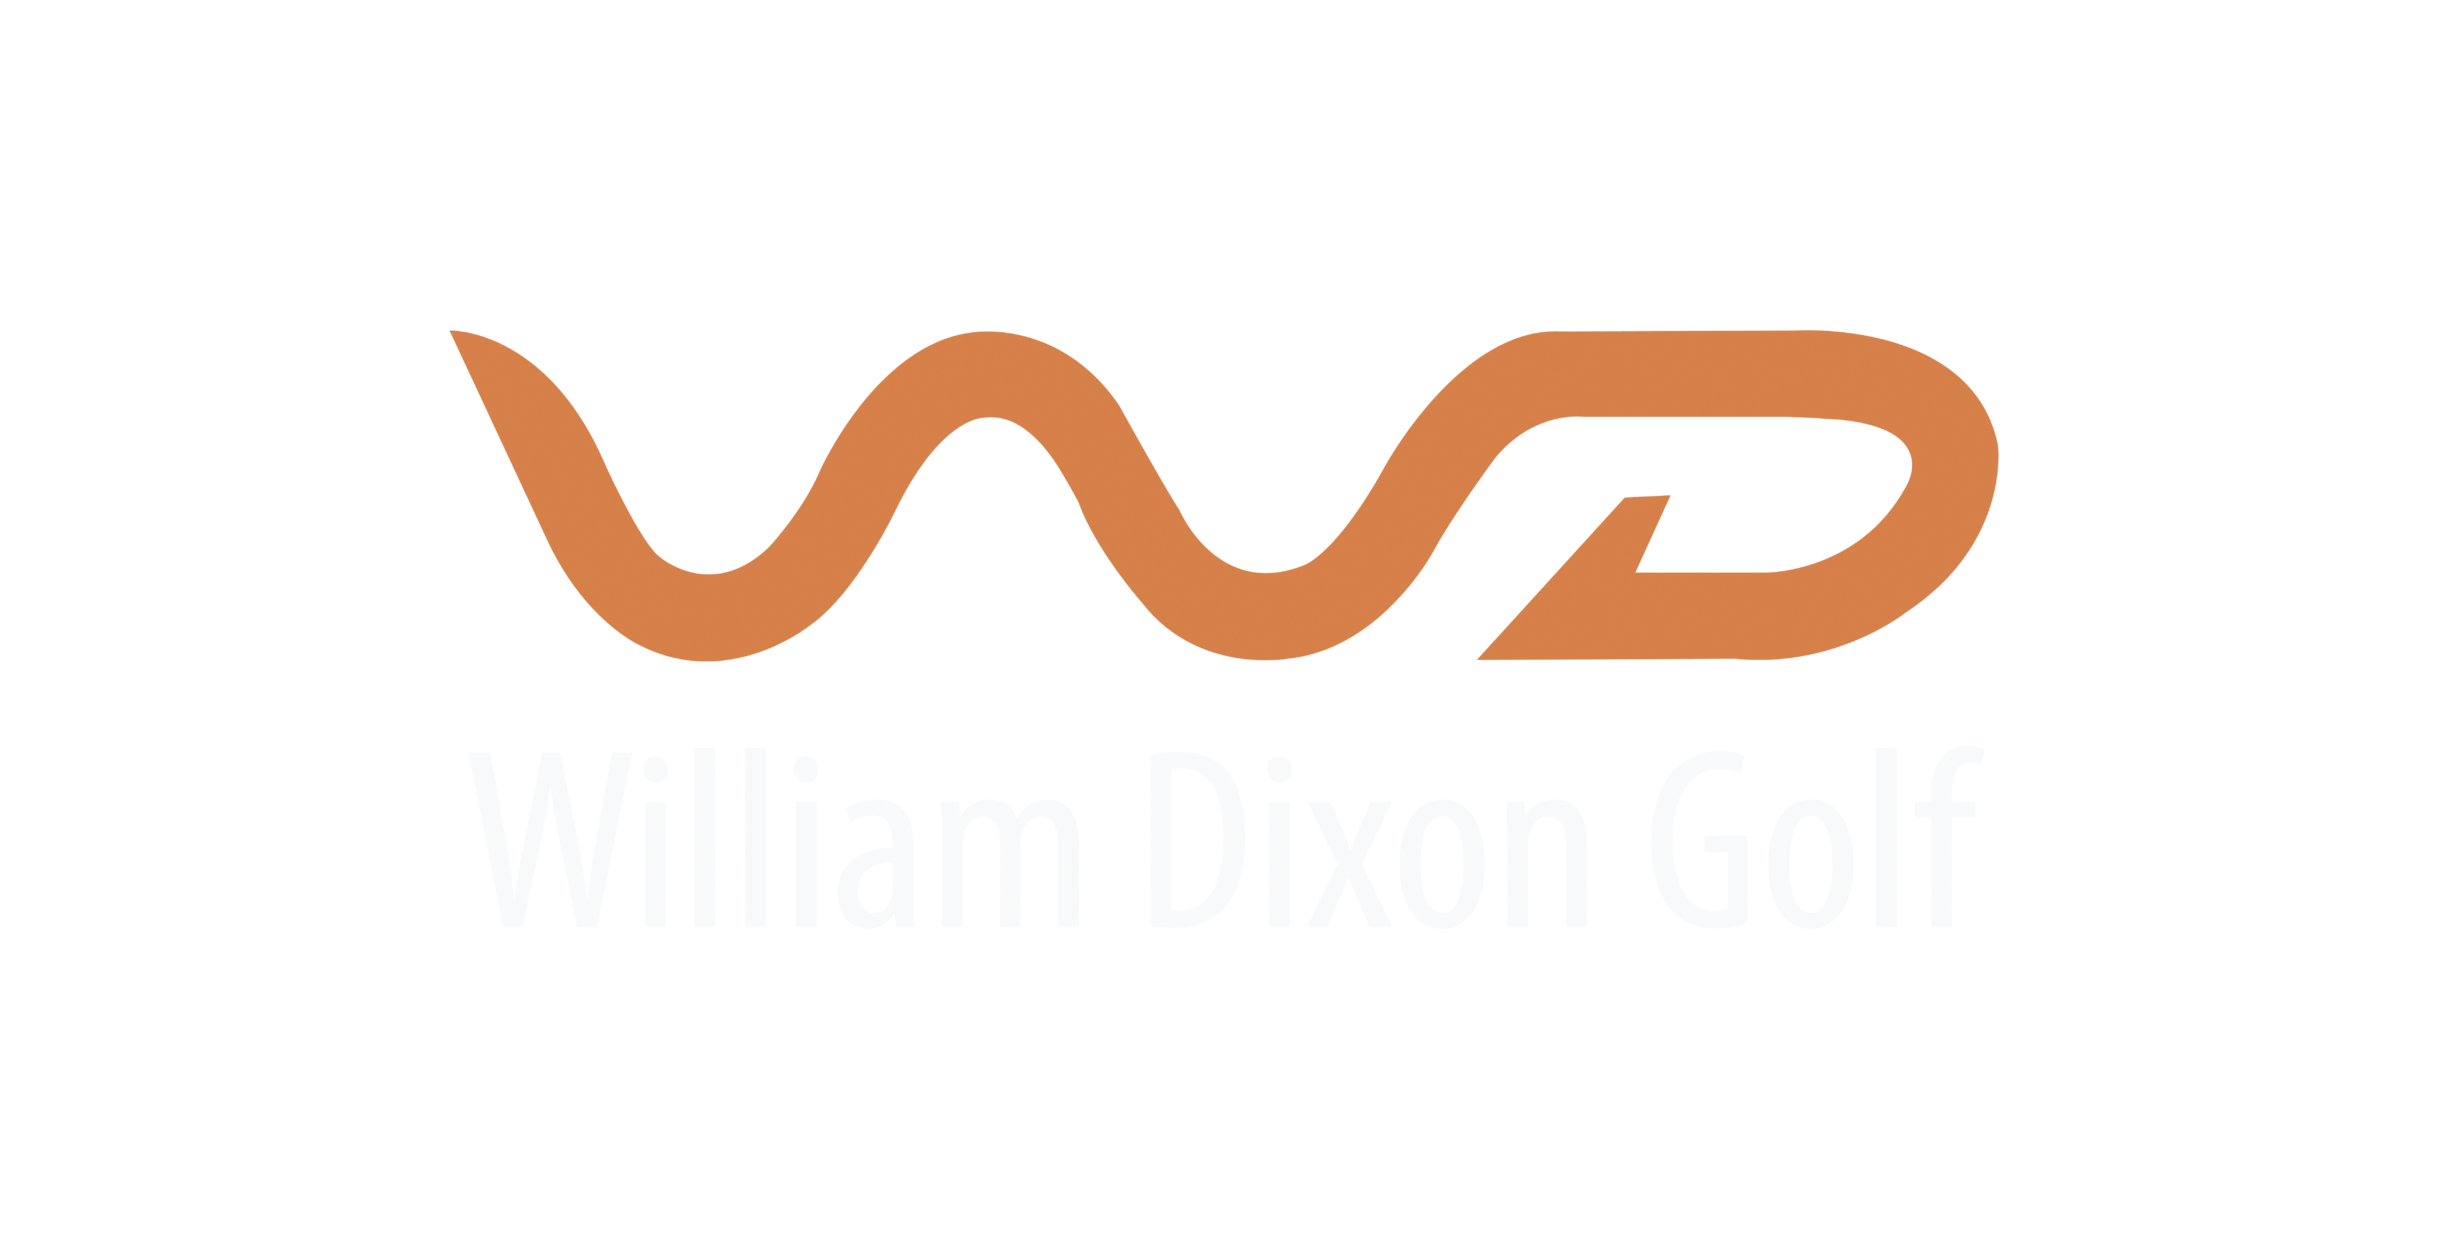 William Dixon Golf